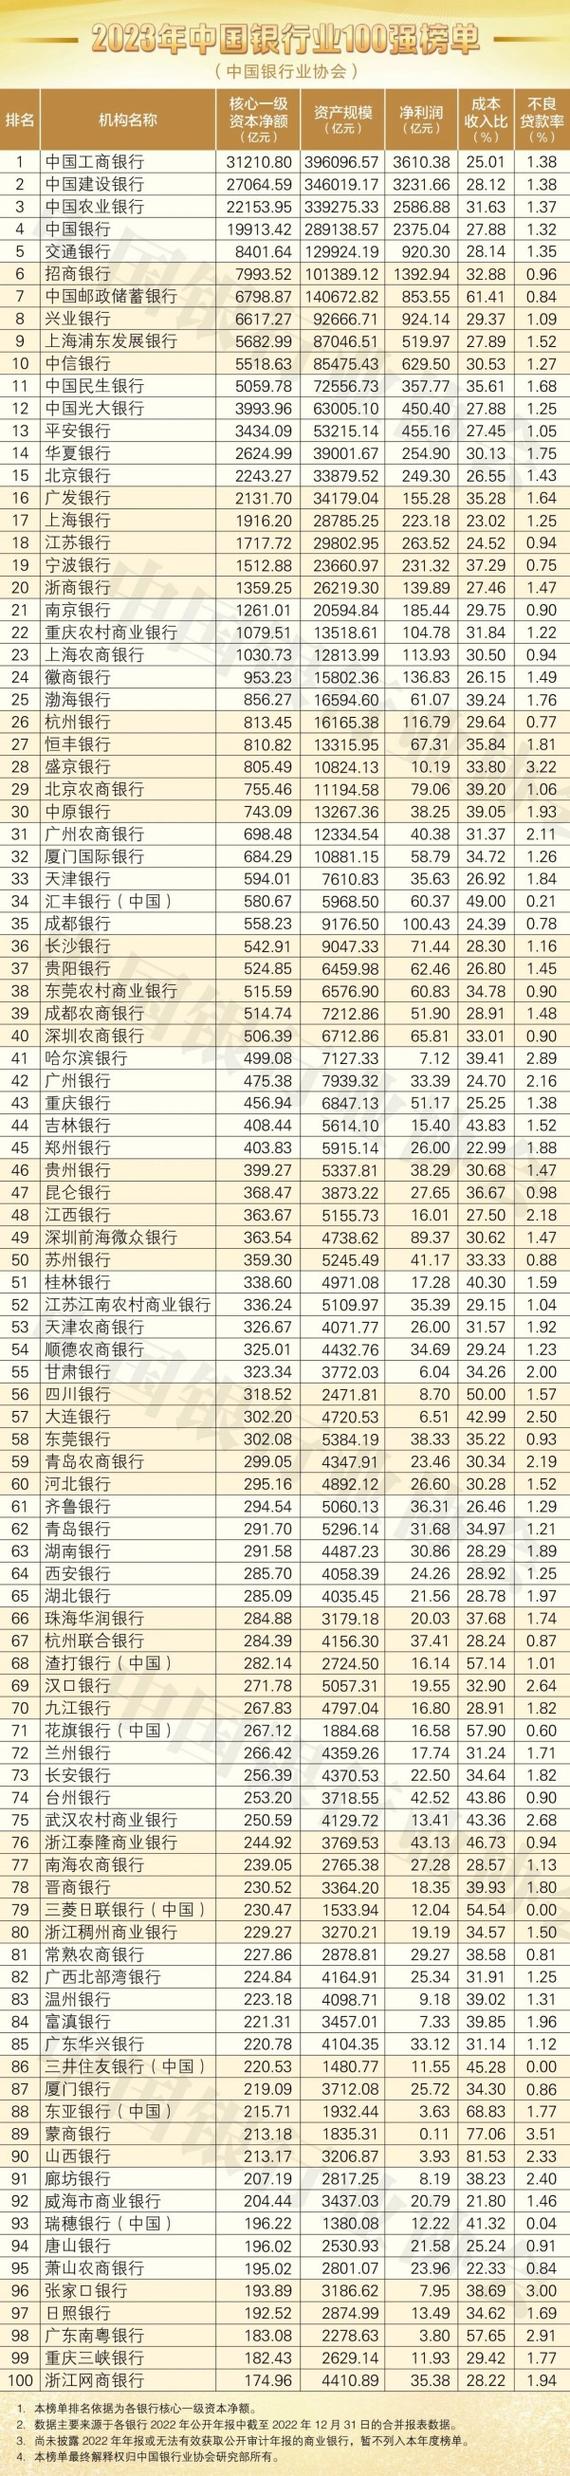 南京银行(601009.SH)：2023年净利润185.02亿元 拟10派5.367元